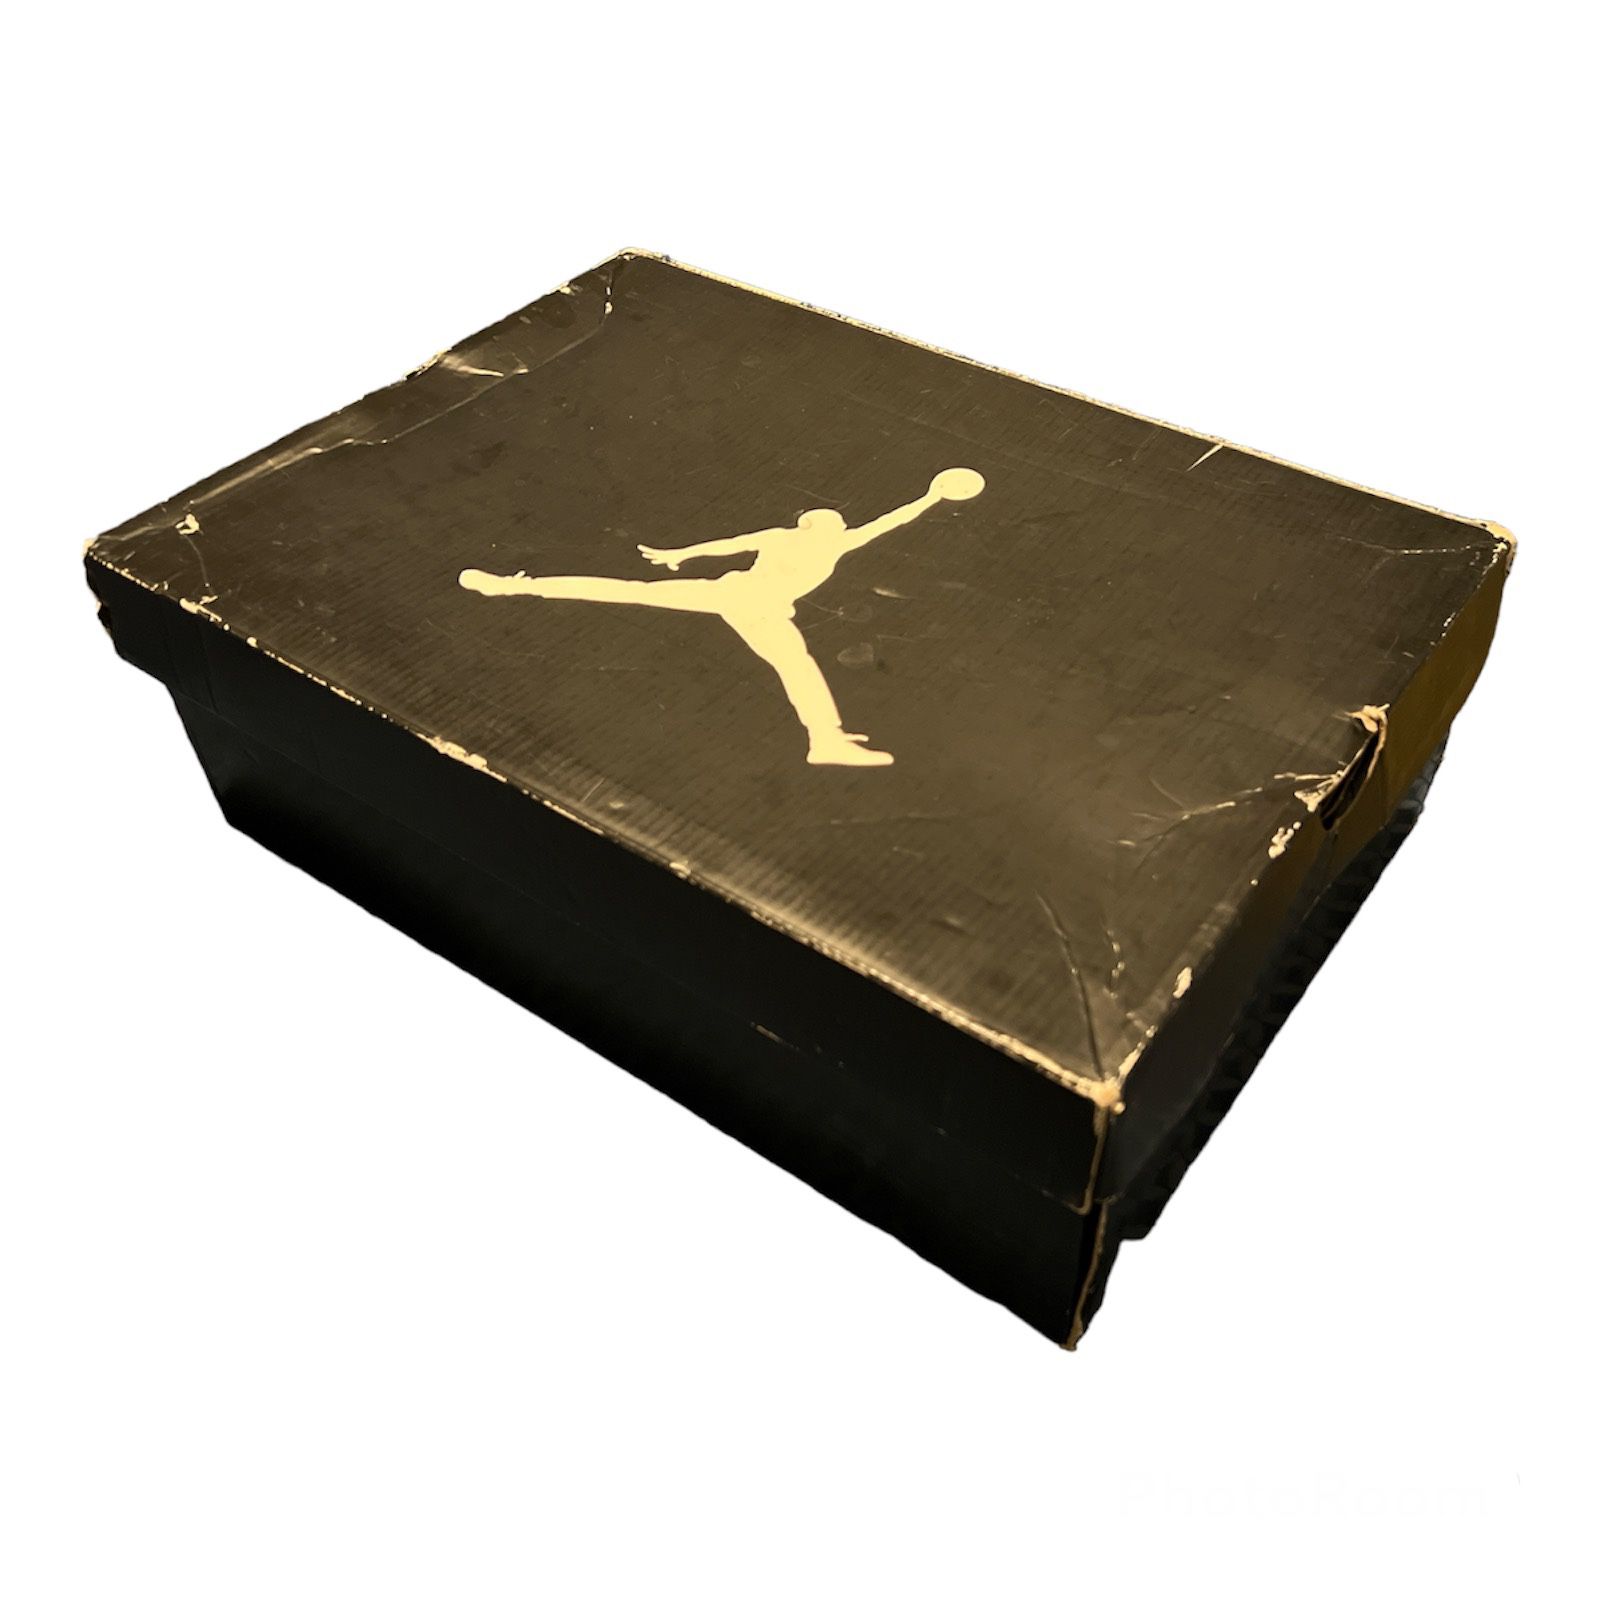 Nike Jordan 6 Rings Bel Air 322992 515 Men’s Size 10.5